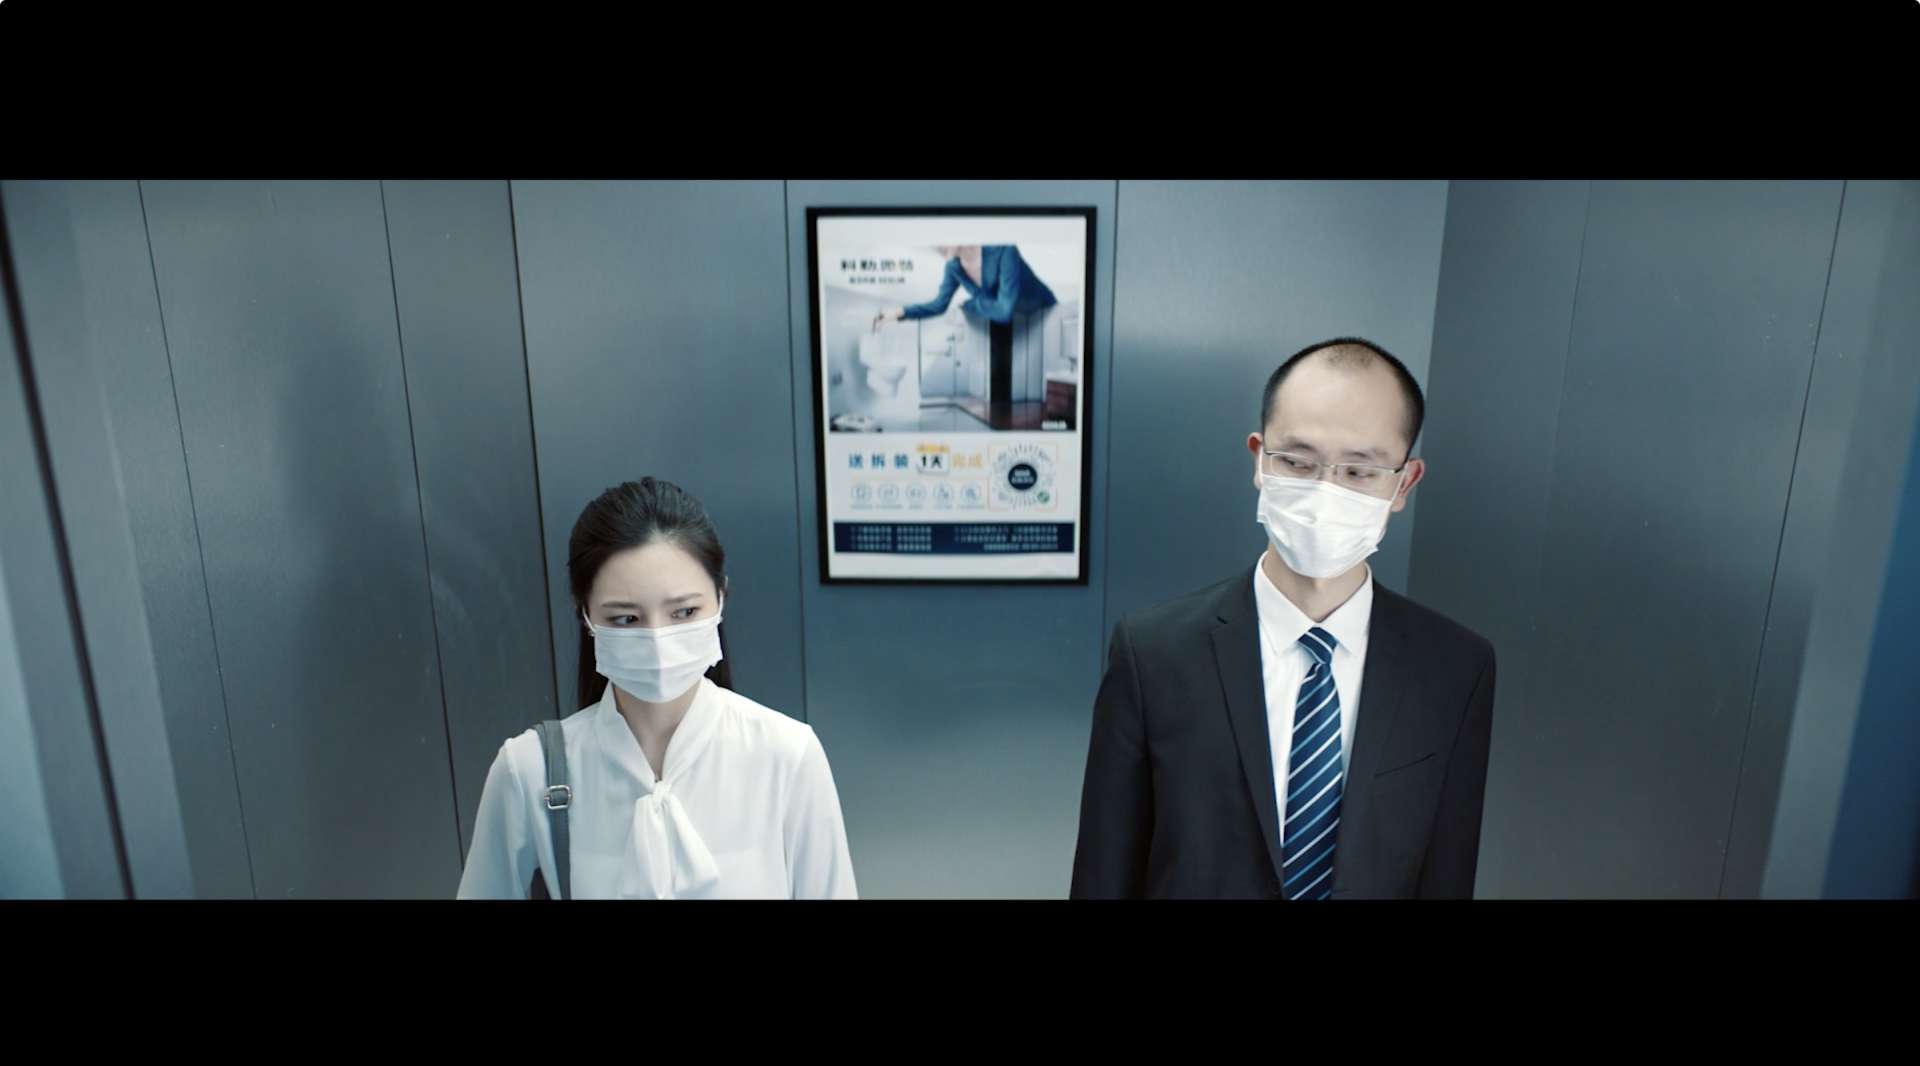 科勒微装病毒广告——《病毒消灭者》by好耶